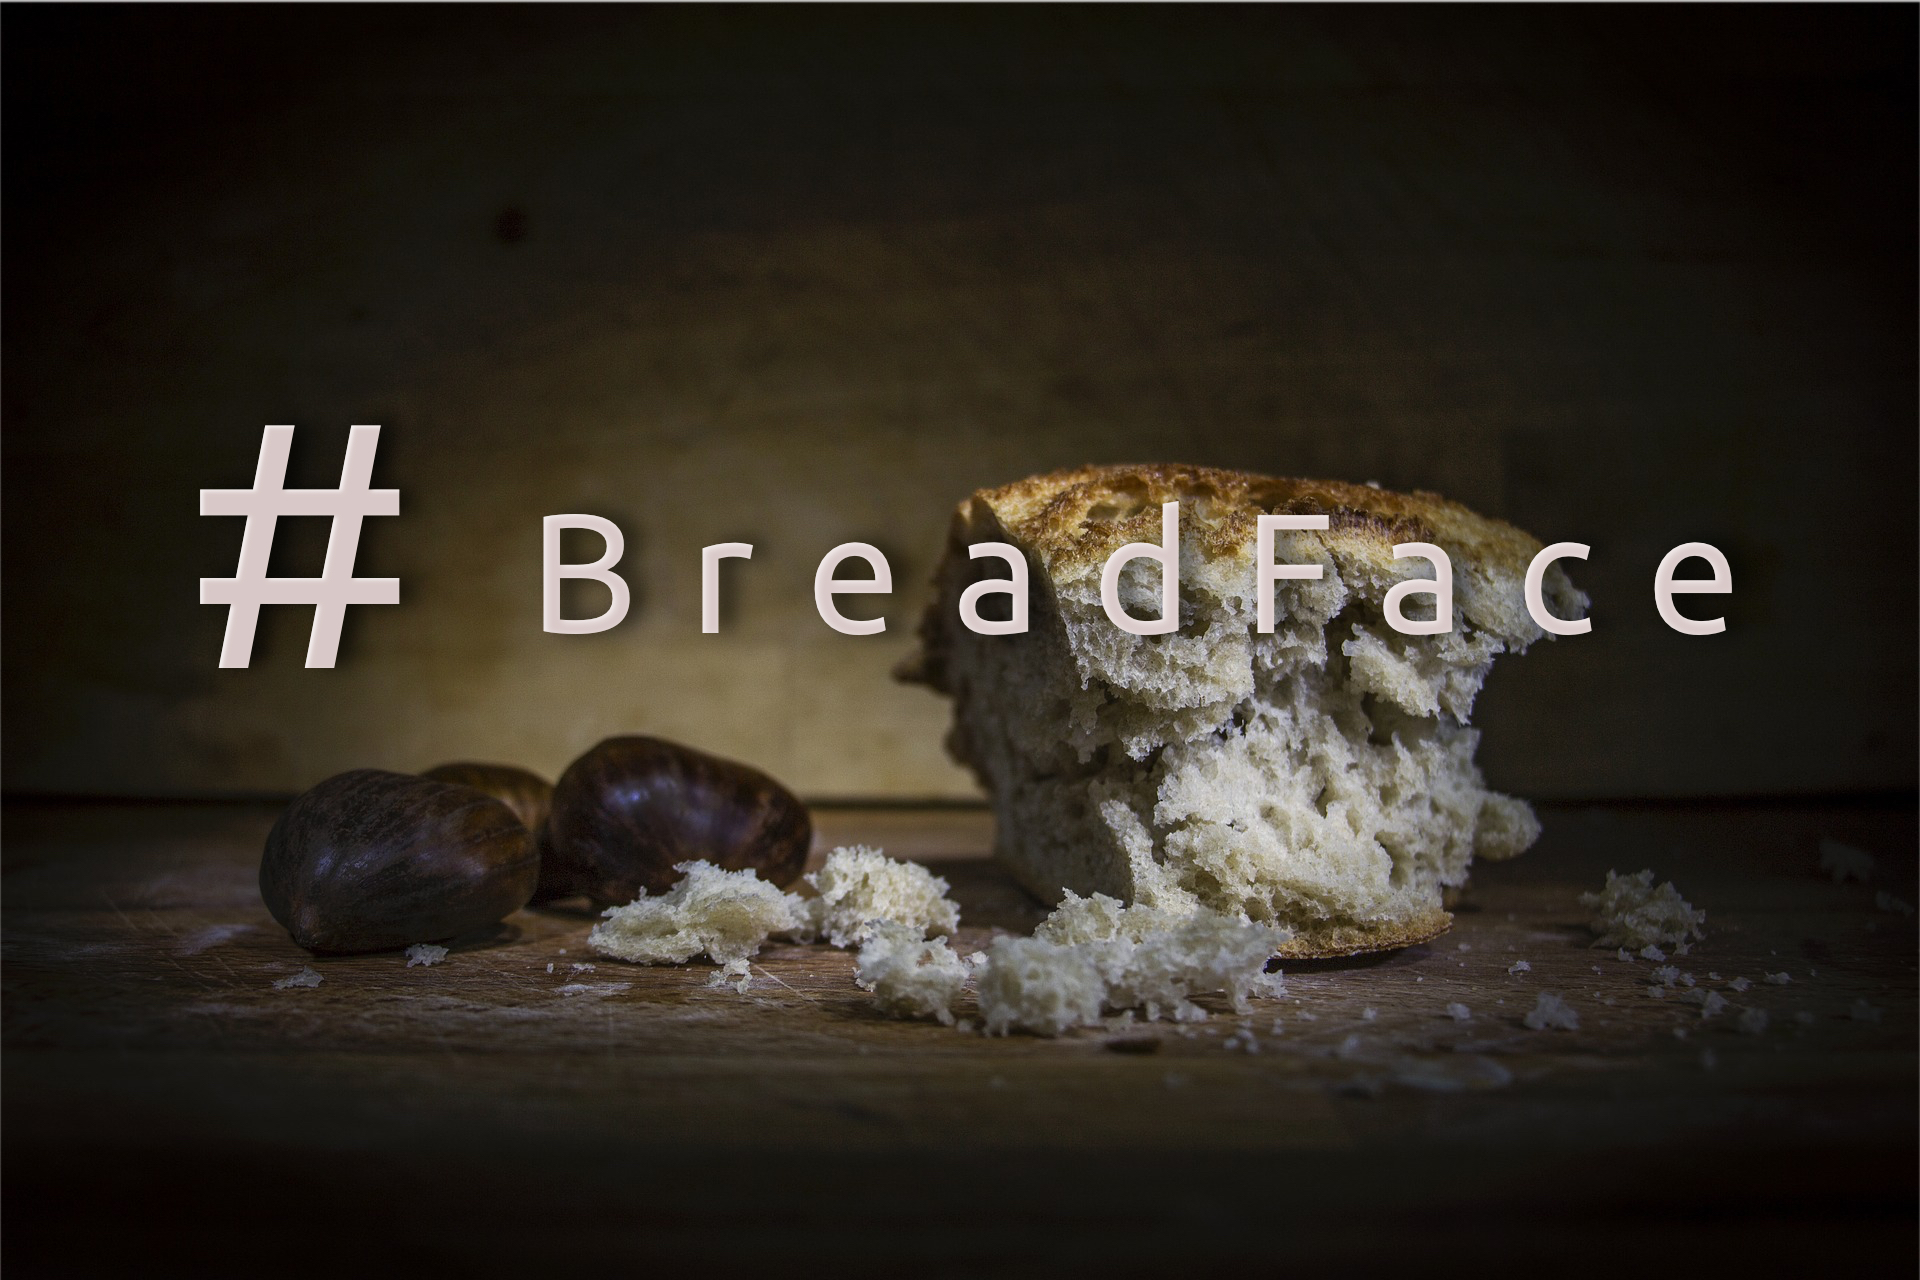 Sein Gesicht ins Brot drücken #BreadFace | Blinzz.de